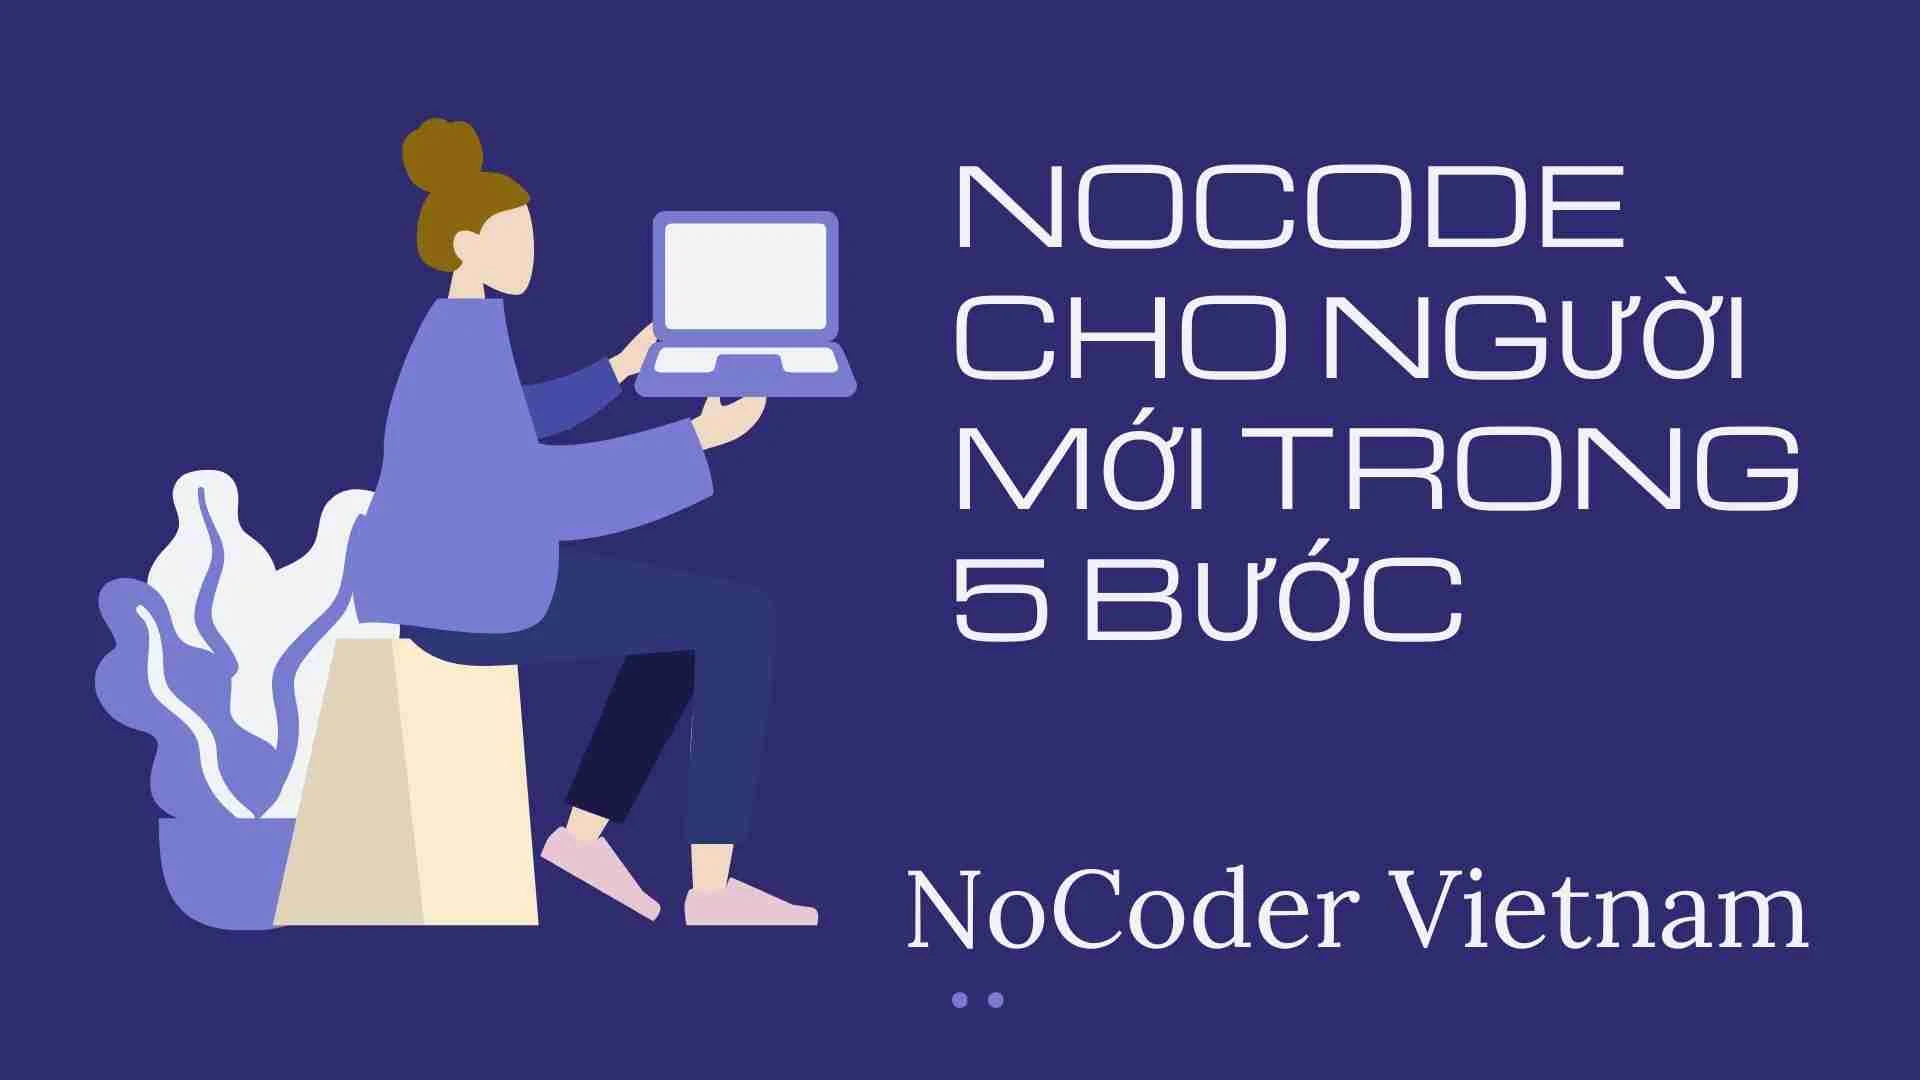 Bắt đầu với NoCode cho người mới trong 5 bước